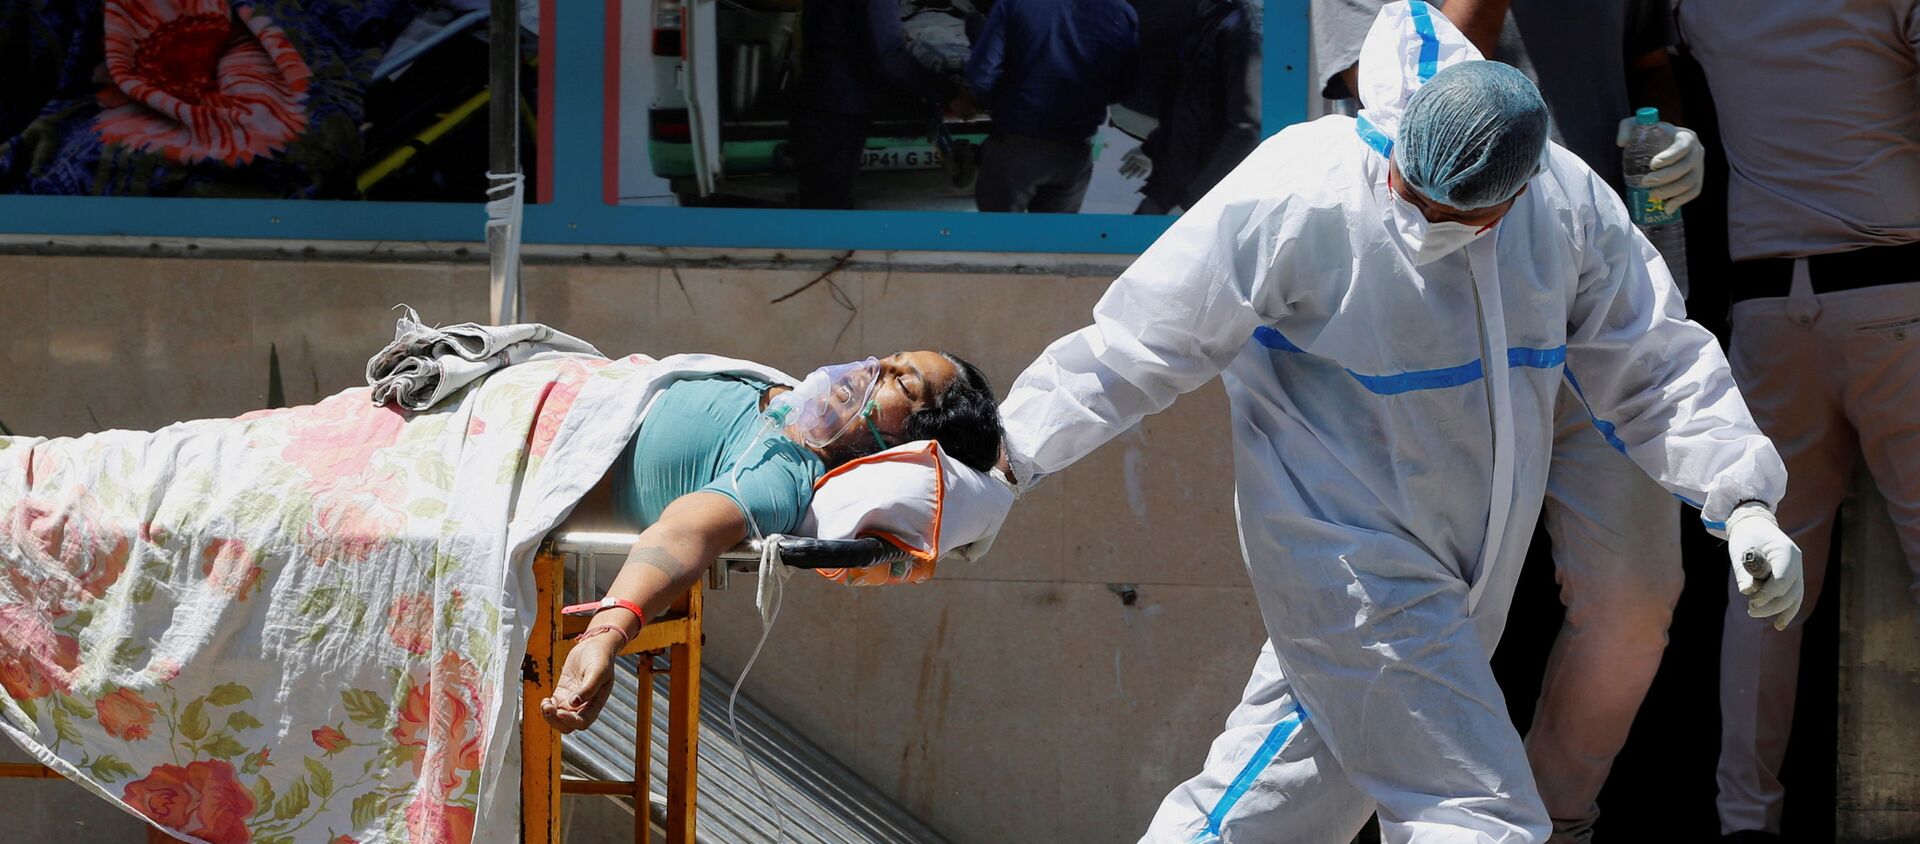 FILE PHOTO: Một nhân viên y tế mang thiết bị bảo vệ cá nhân (PPE) bế một bệnh nhân mắc bệnh do coronavirus (COVID-19) bên ngoài khu cấp cứu tại bệnh viện Guru Teg Bahadur, ở New Delhi, Ấn Độ, ngày 24 tháng 4 năm 2021. - Sputnik Việt Nam, 1920, 05.05.2021